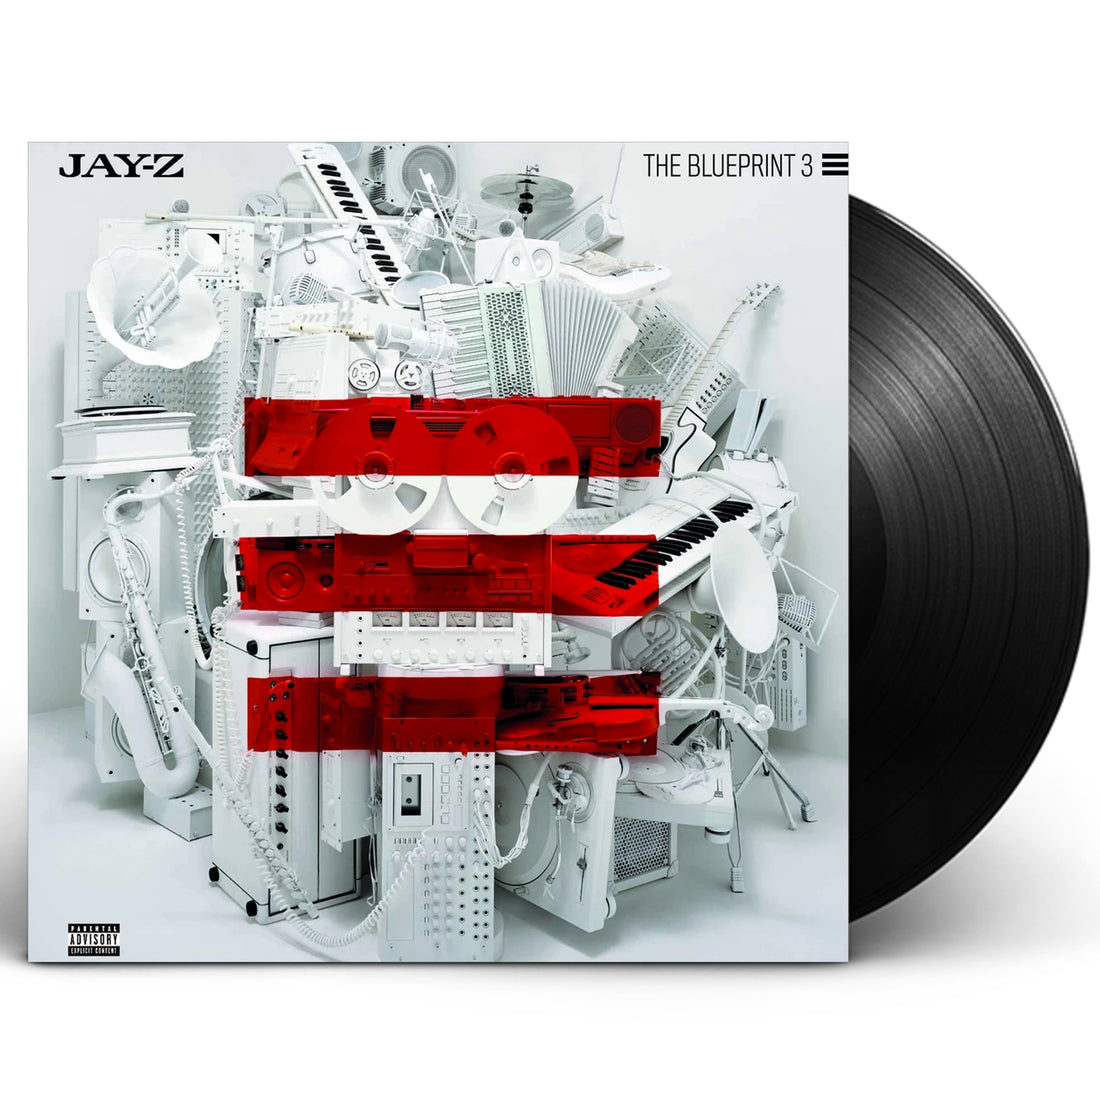 Jay Z "The Blueprint 3" 2xLP Vinyl